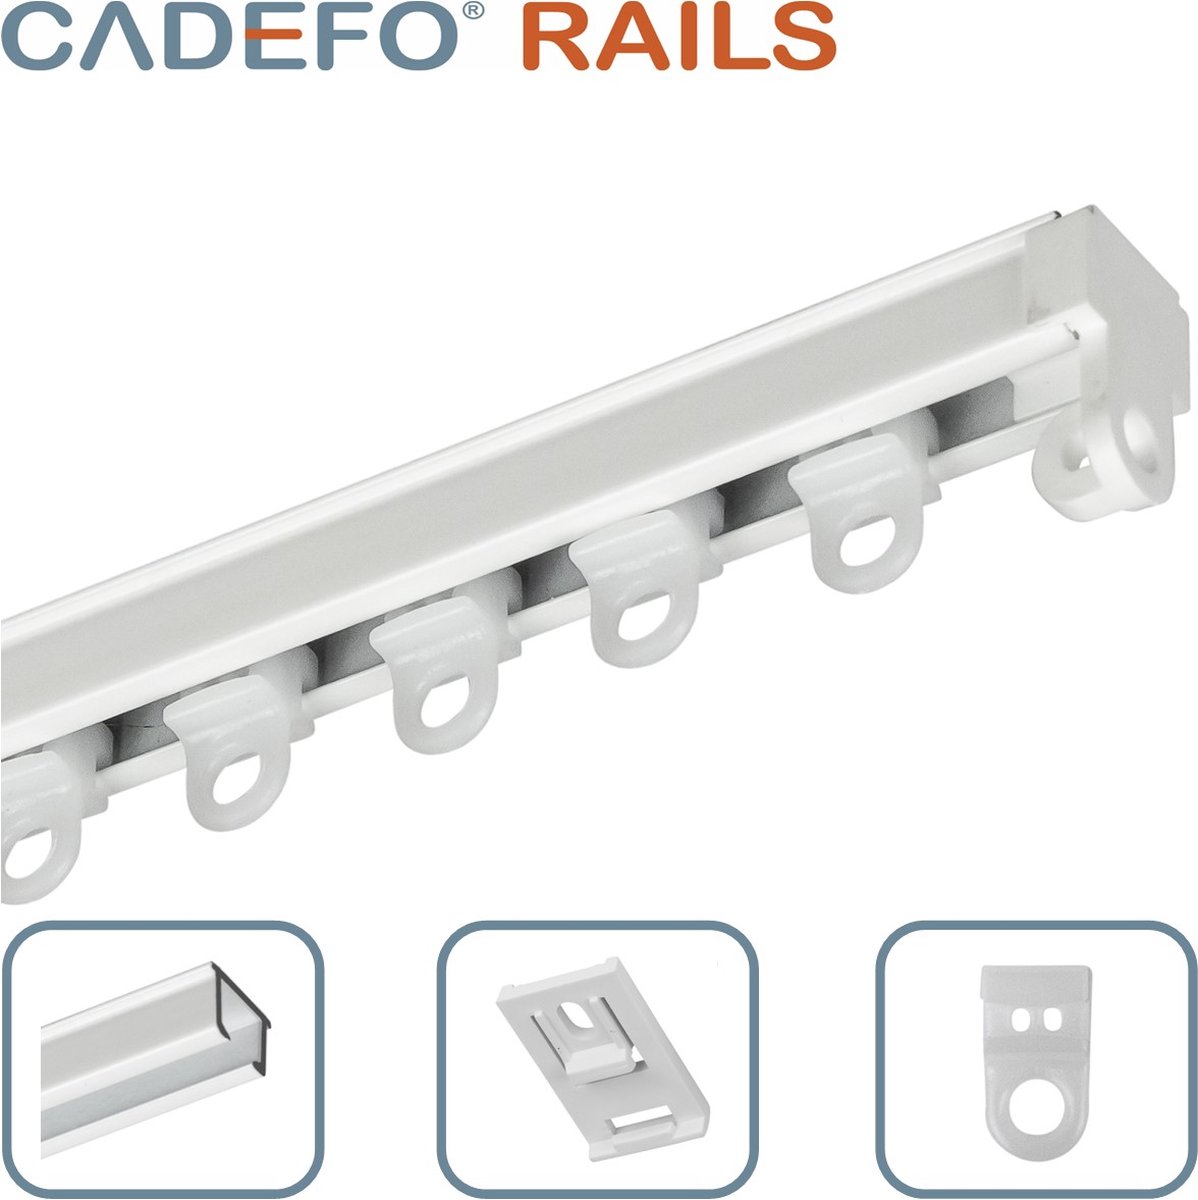 CADEFO RAILS (080 - 100 cm) Gordijnrails - Compleet op maat! - UIT 1 STUK - Leverbaar tot 6 meter - Plafondbevestiging - Lengte 95 cm